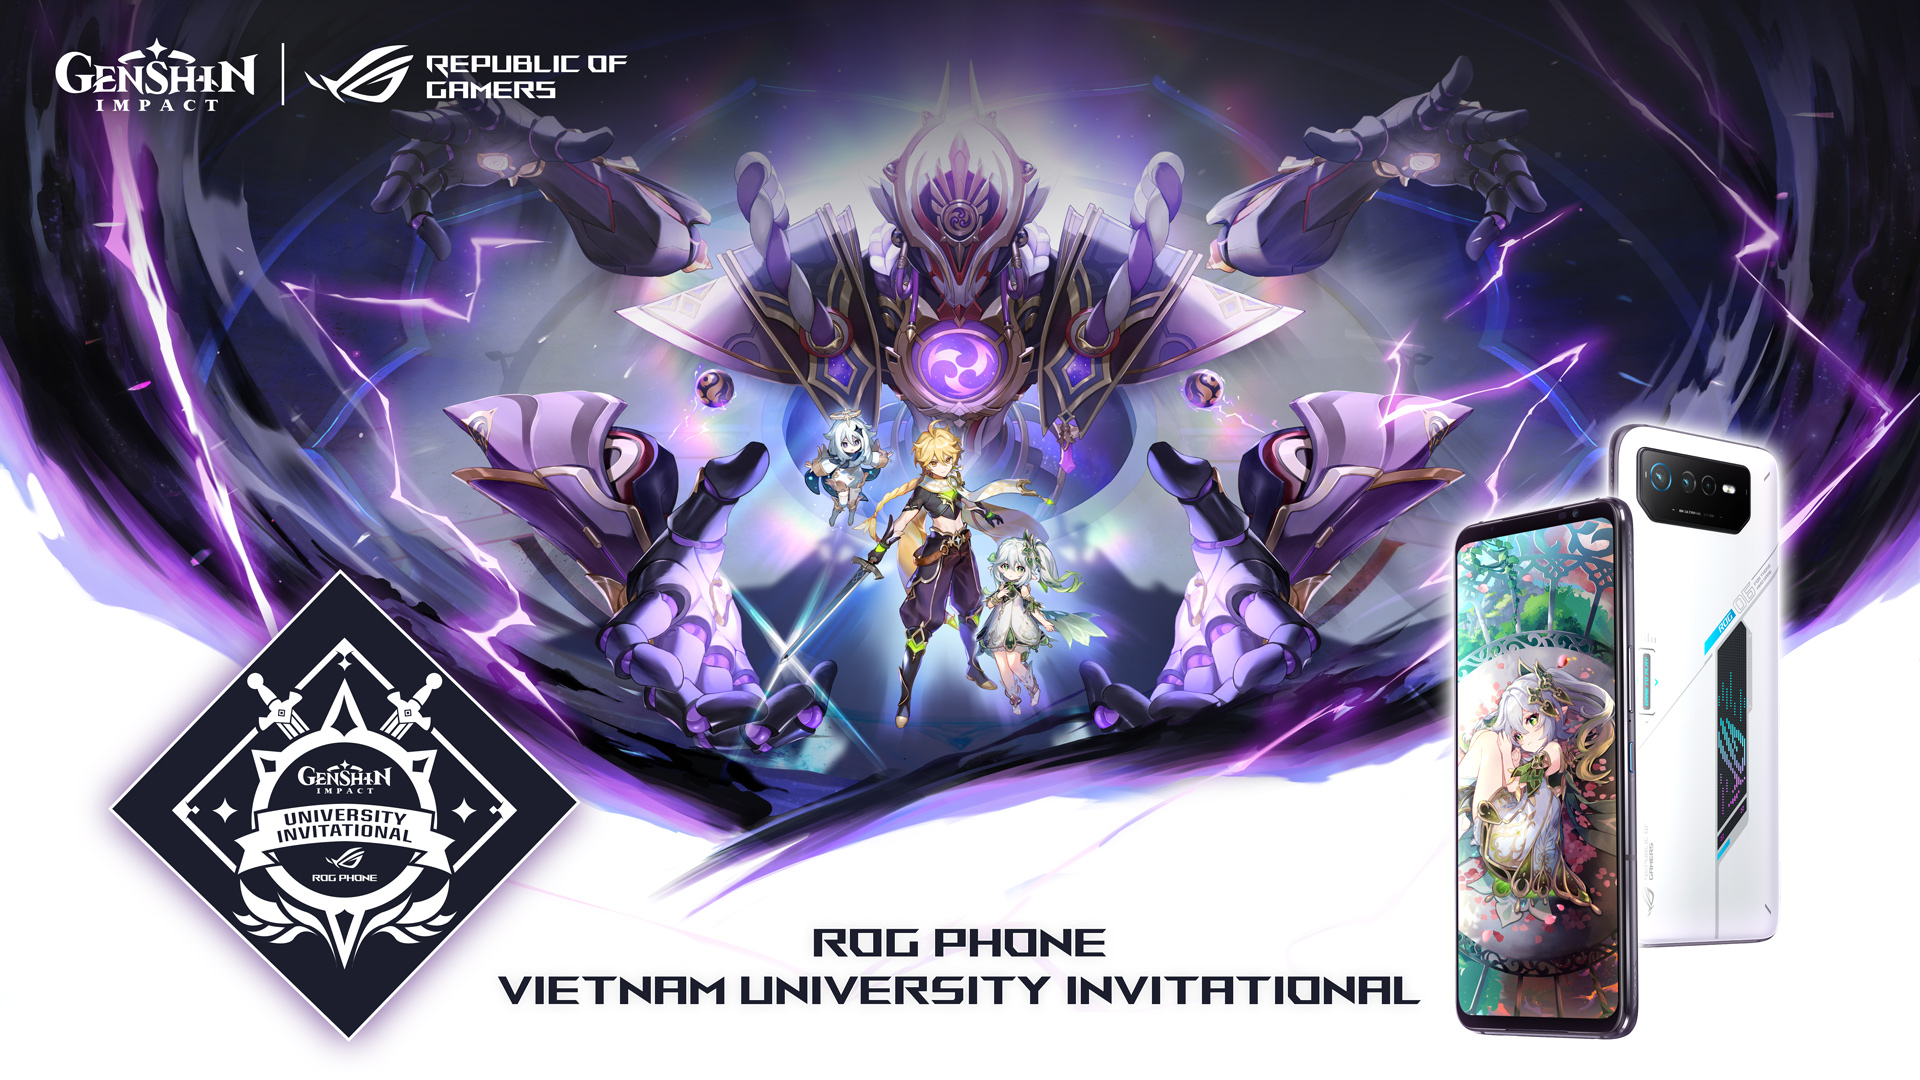 ASUS ROG công bố giải đấu ROG Phone Vietnam University Invitational